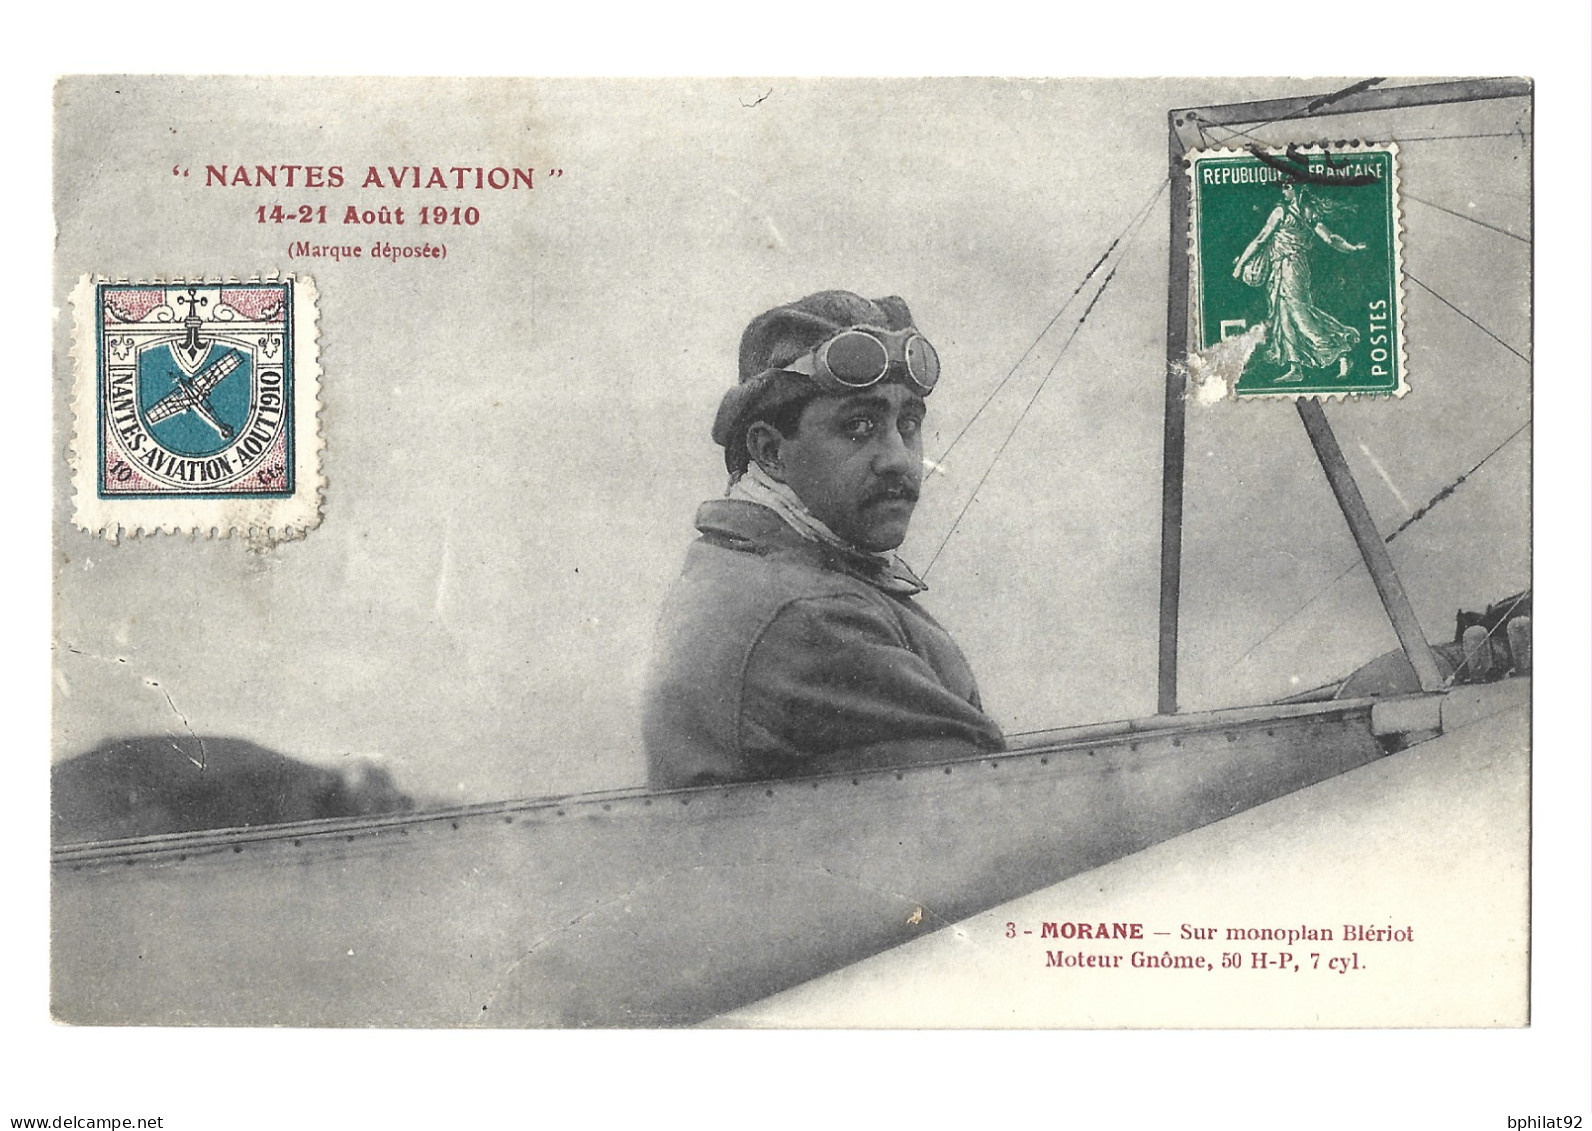 !!! CARTE POSTALE AVEC VIGNETTE DES FÊTES D'AVIATION DE NANTES, AOÛT 1910, PETITS DÉFAUTS - Aviación